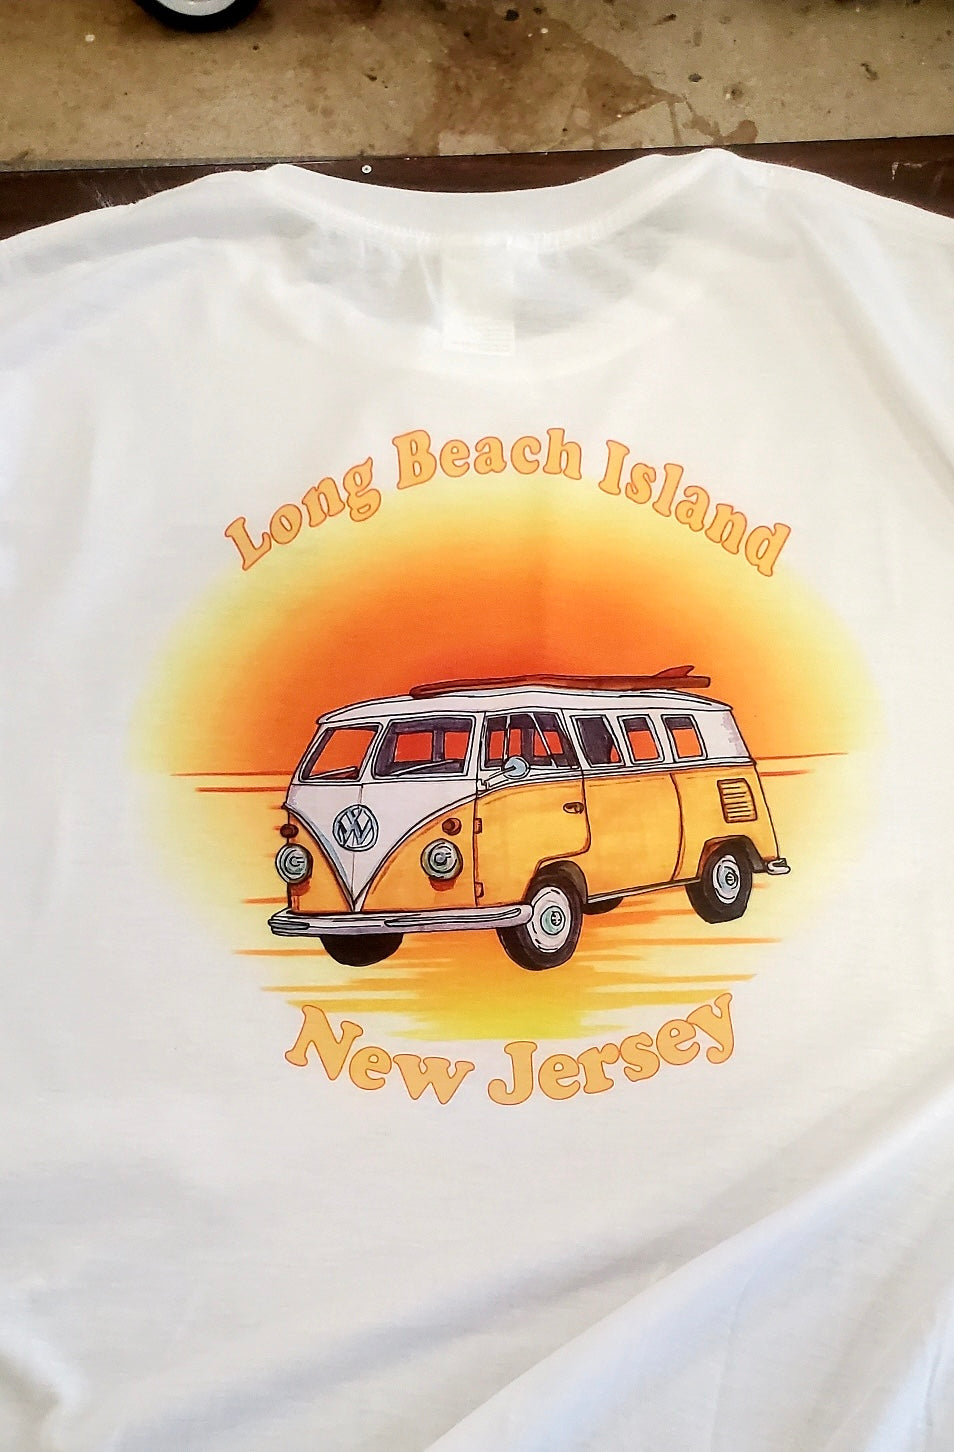 Long Beach Island Surfer Van t-shirt